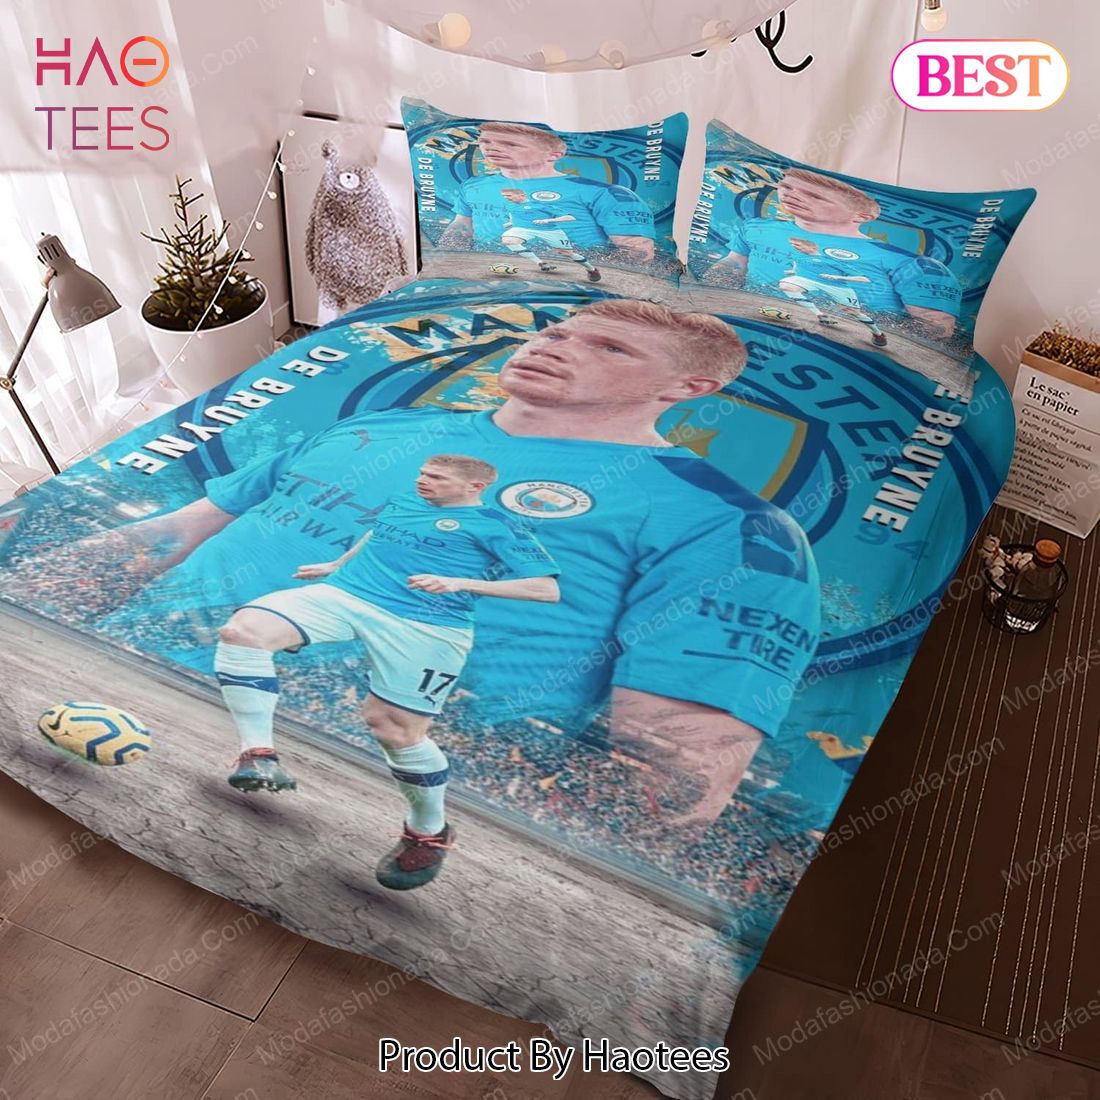 Kevin De Bruyne Manchester City Bedding Sets Bed Sets, Bedroom Sets, Comforter Sets, Duvet Cover, Bedspread